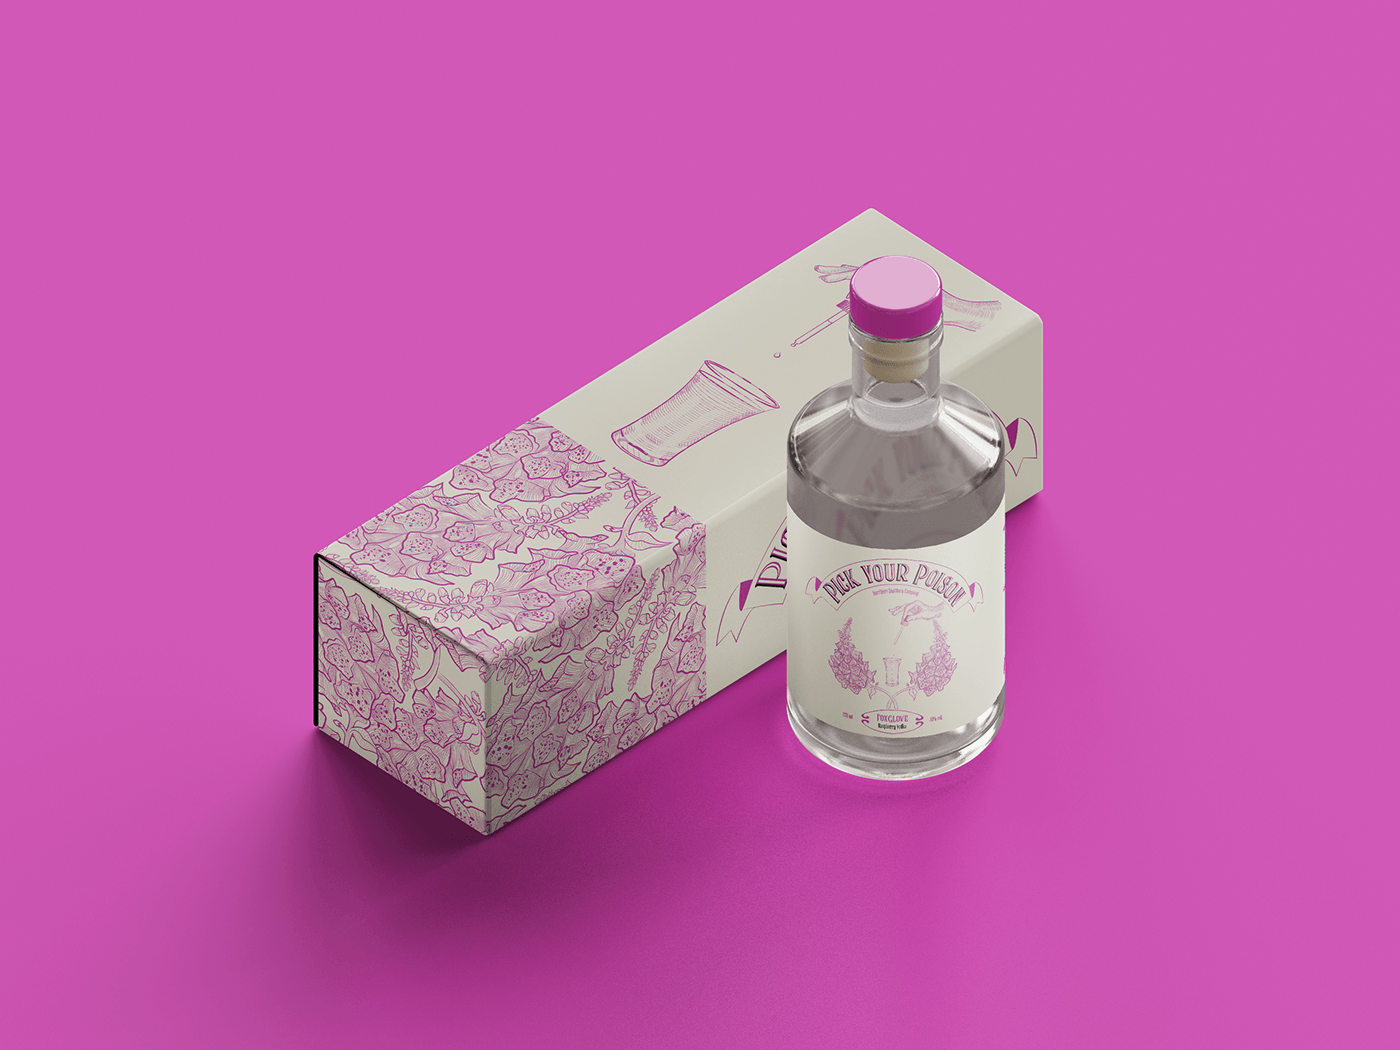 design adobe illustrator Graphic Designer ILLUSTRATION  Digital Art  Packaging Brand Design drink alcohol Label